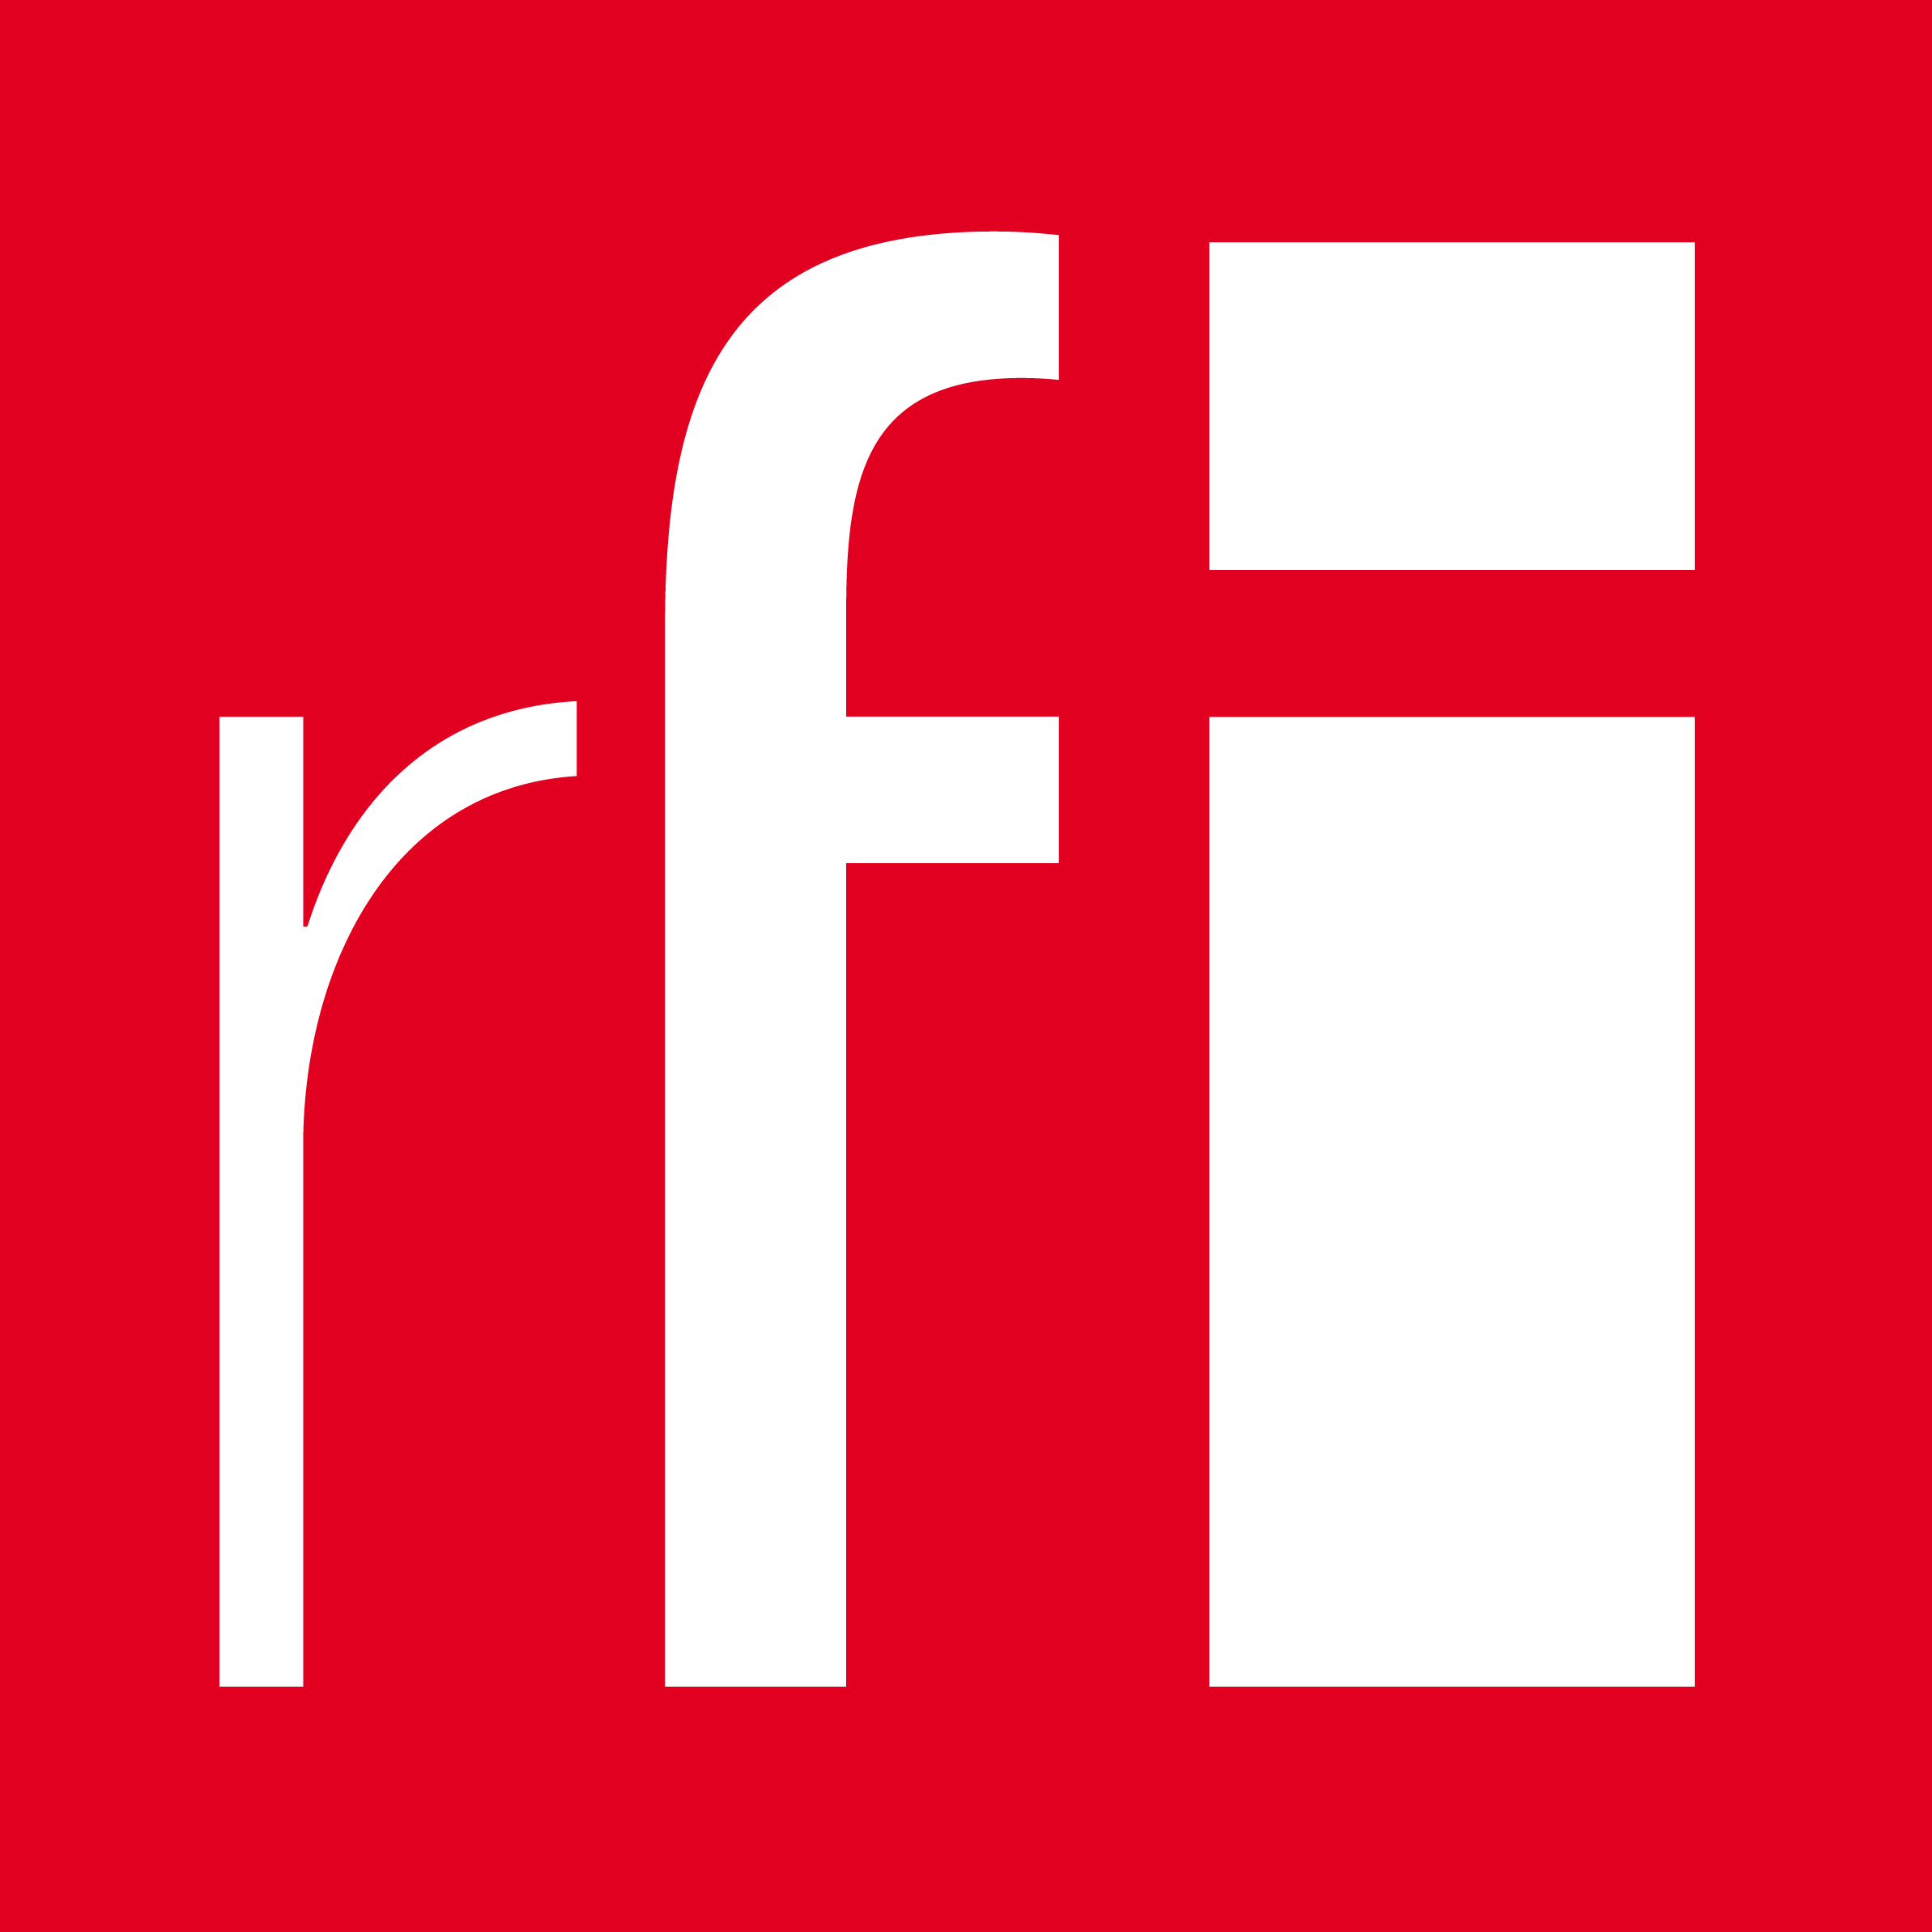 [Radio] ¿Qué es el Digital Labor? (RFI, 16 oct. 2015)